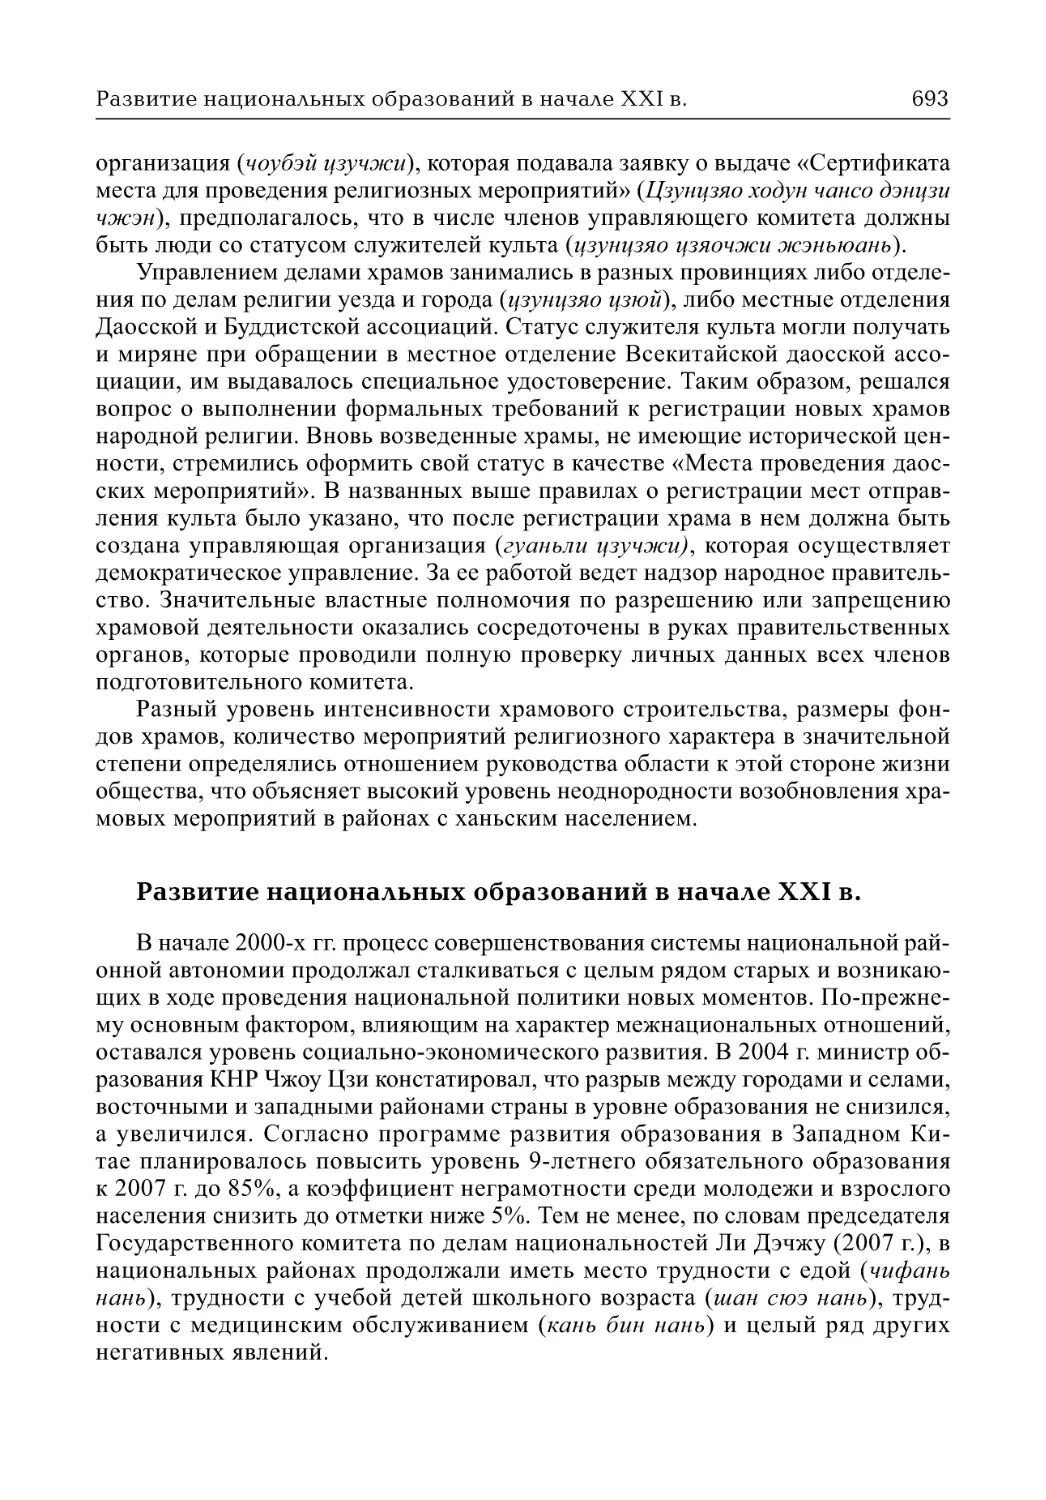 Развитие национальных образований в начале XXI в. (Т.В. Лазарева)